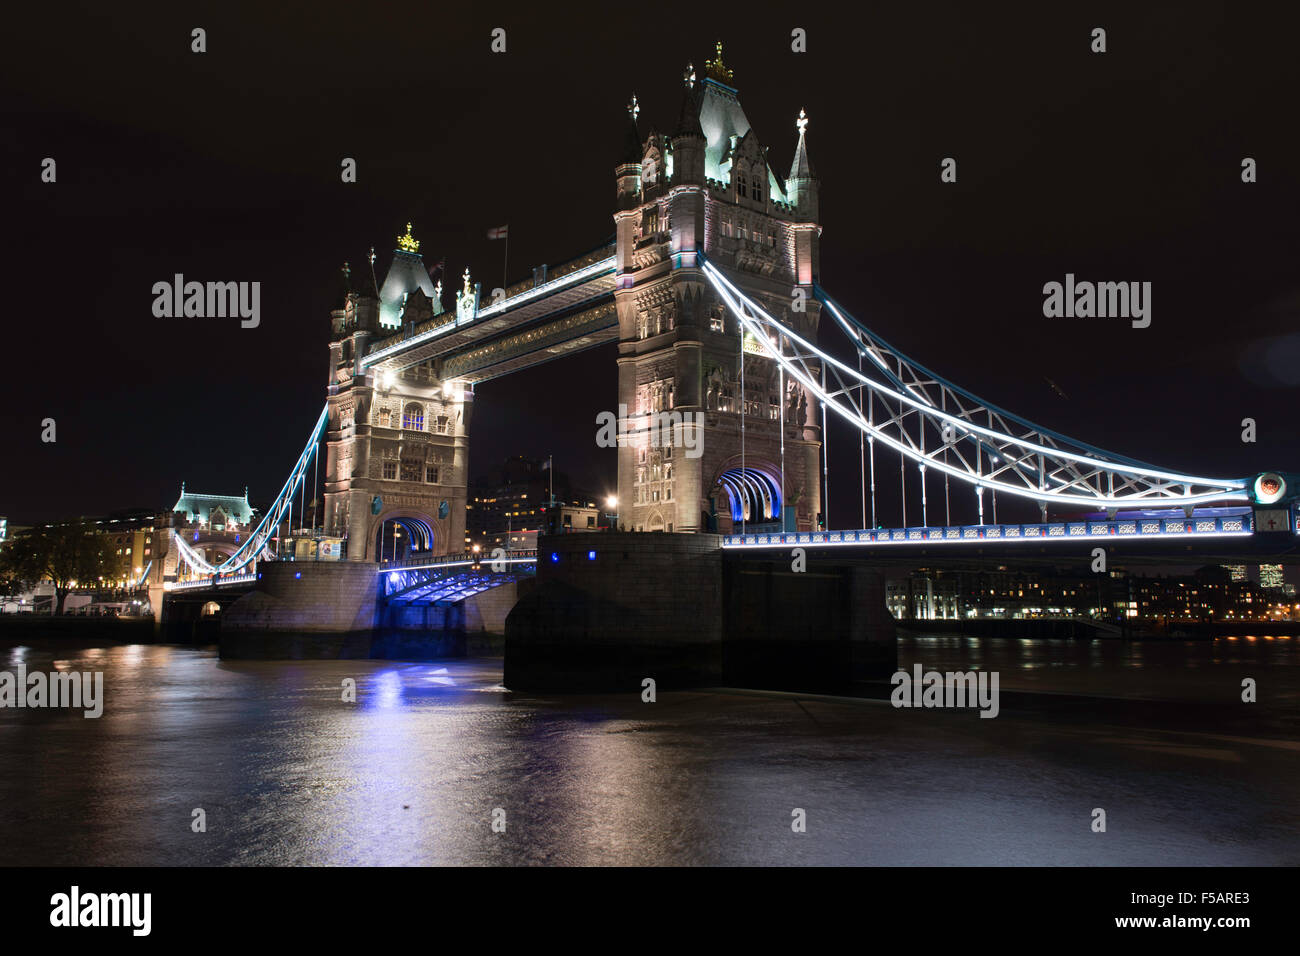 Un Tower Bridge illuminé sur la Tamise, Londres, Angleterre, Royaume-Uni Banque D'Images